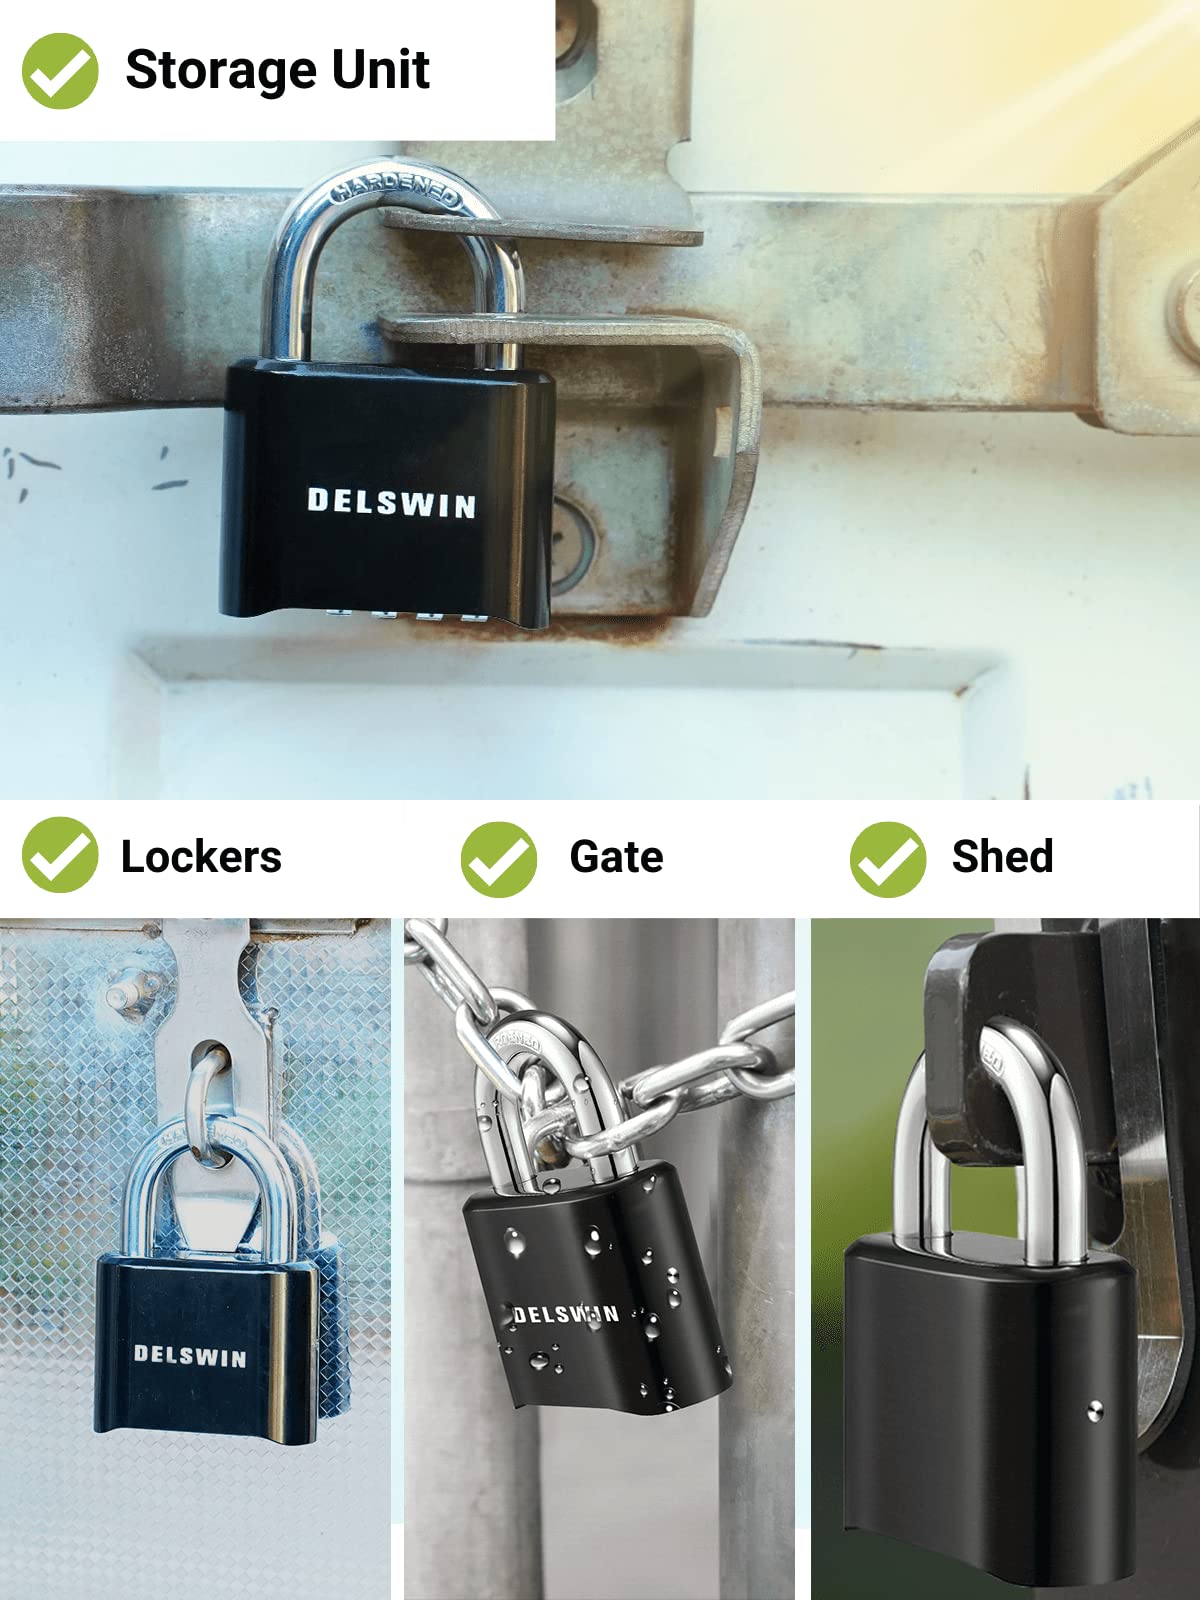 DELSWIN 4-Digit Combination Lock Outdoor Padlock - Heavy Duty Locker Lock with Hardened Steel Shackle, Waterproof Combo Lock for Gym Locker, Hasp Storage, Shed, Fence, Gate (Black,1Pcs)